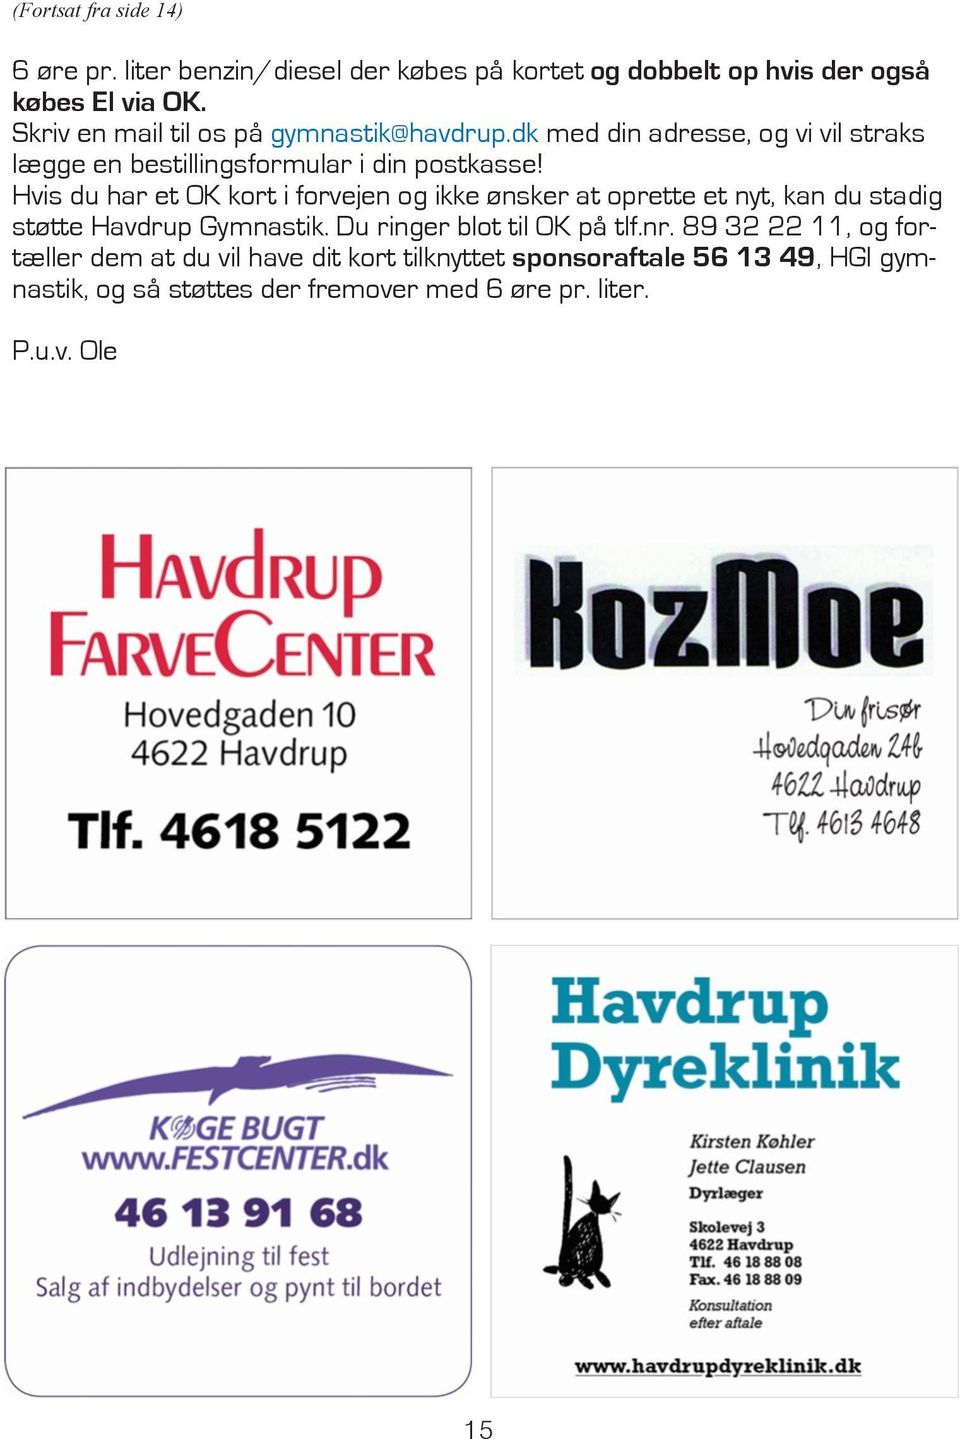 Hvis du har et OK kort i forvejen og ikke ønsker at oprette et nyt, kan du stadig støtte Havdrup Gymnastik. Du ringer blot til OK på tlf.